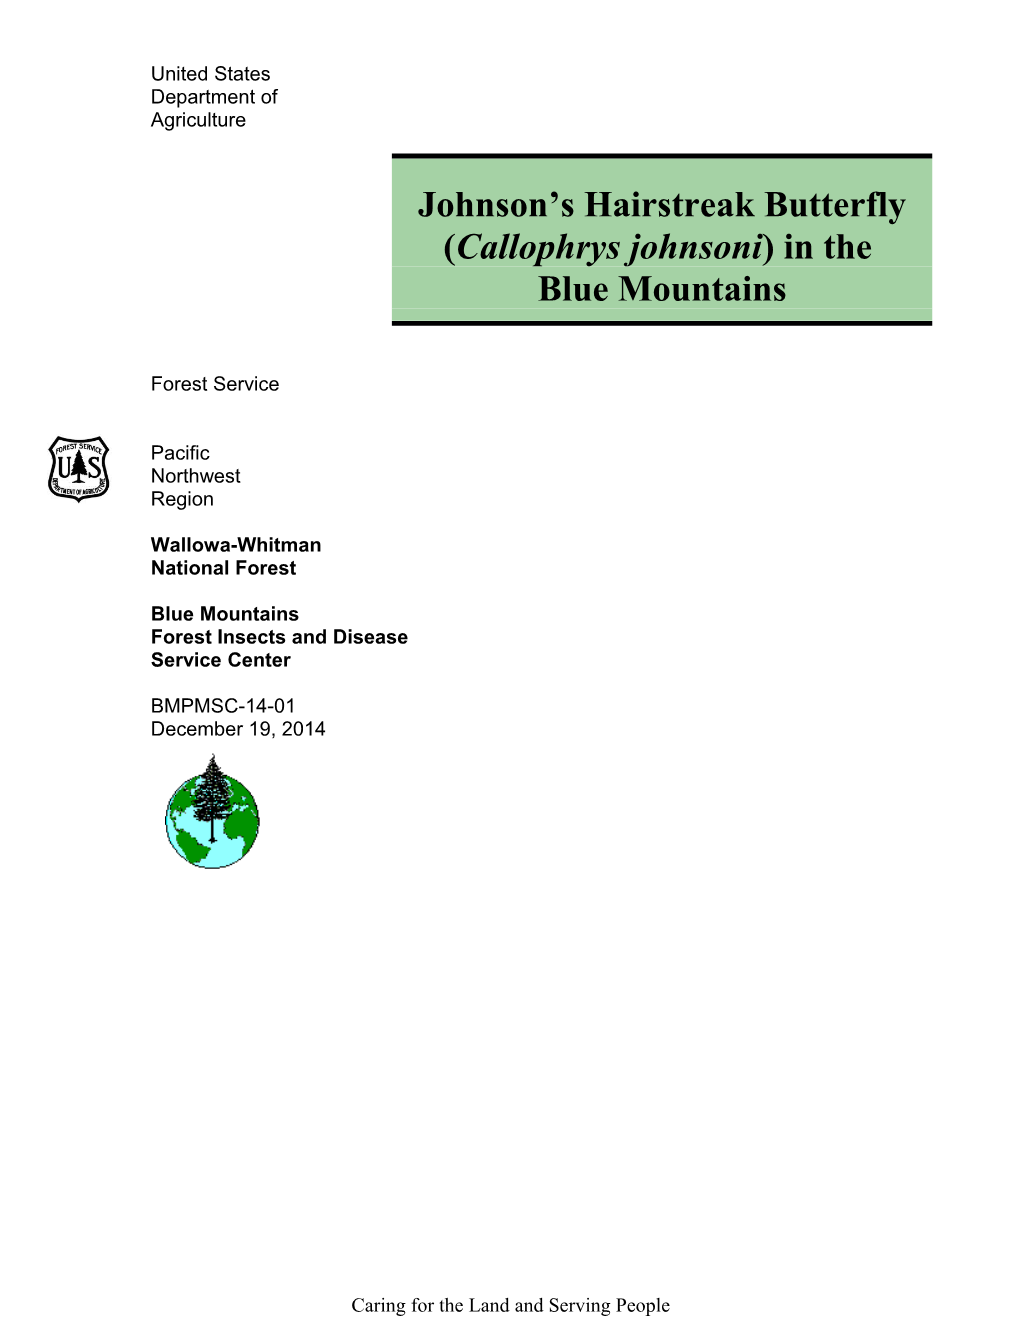 Johnson Shairstreak Butterfly (Callophrysjohnsoni) in The